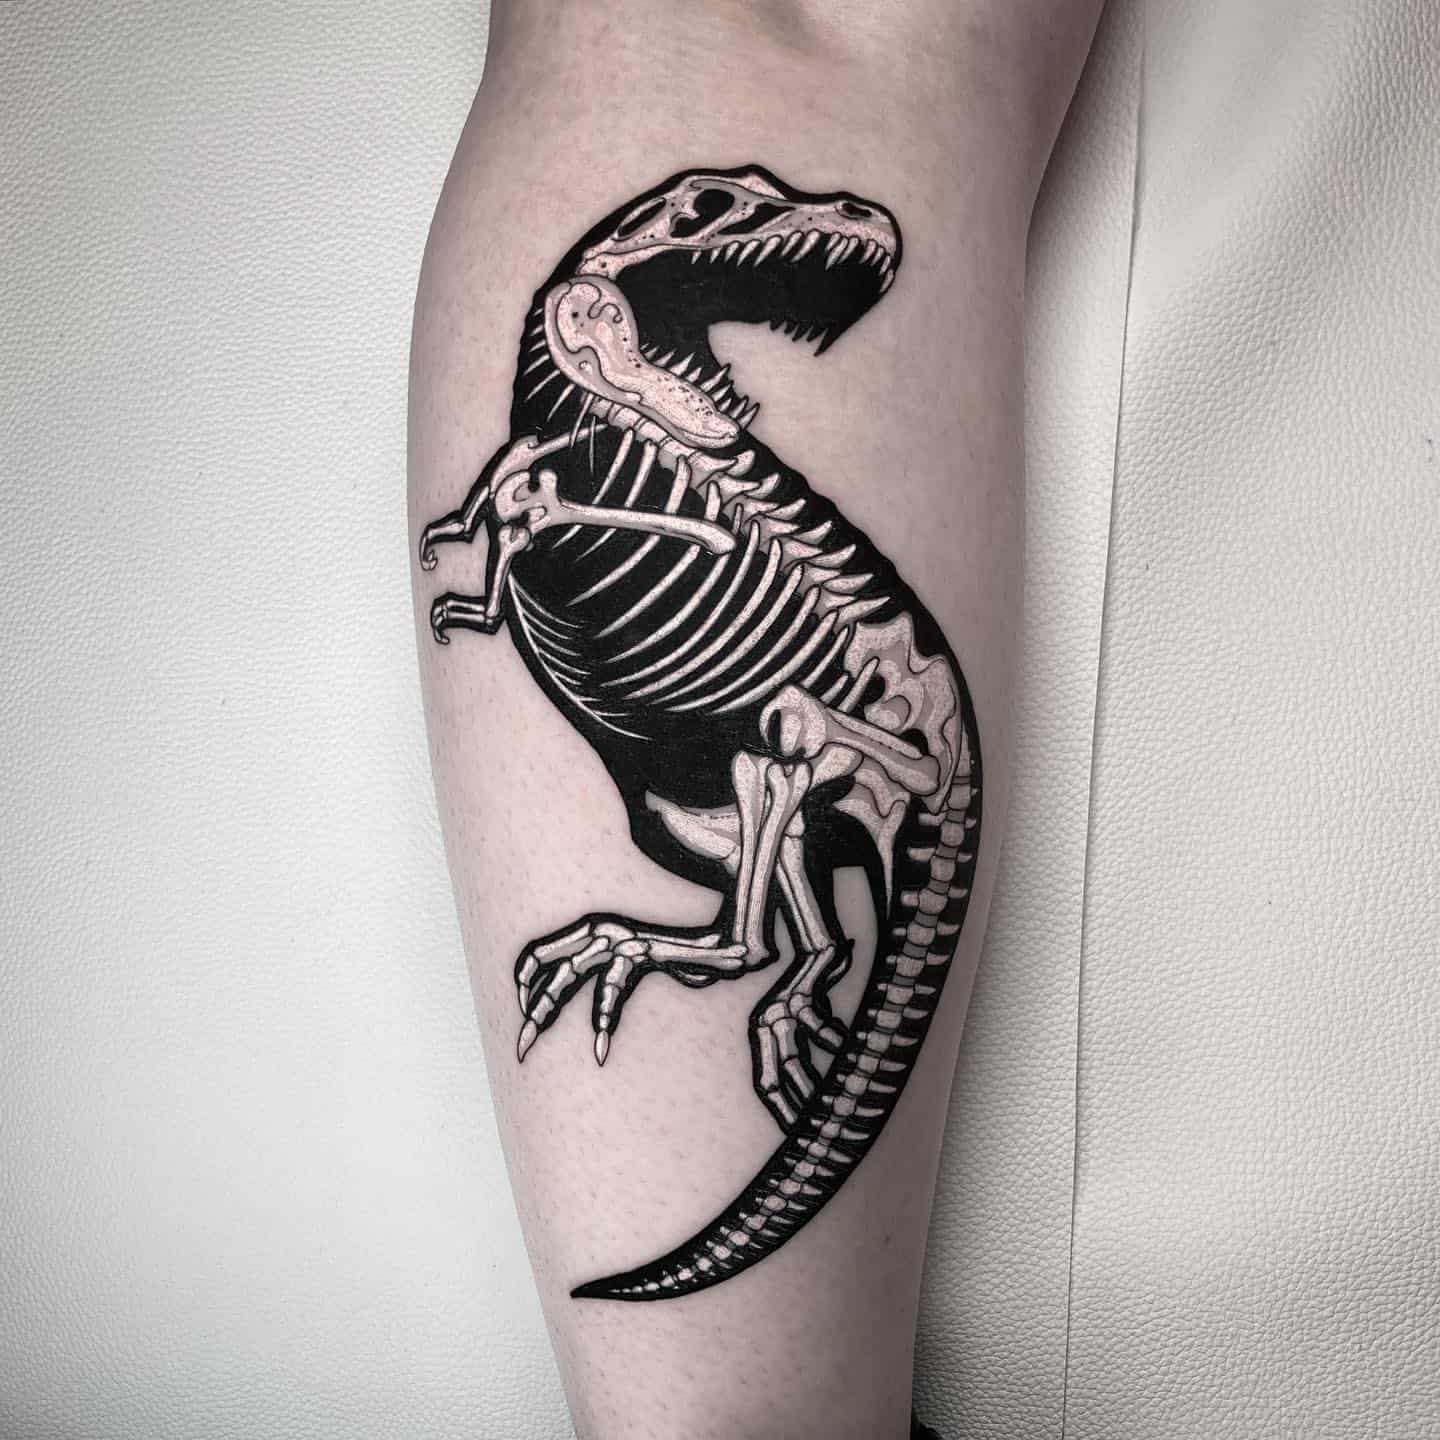 Tattoo uploaded by Unterstrich Tätowierungen • T-rex tattoo #t-Rex #dino # dinosaur #hamburg • Tattoodo